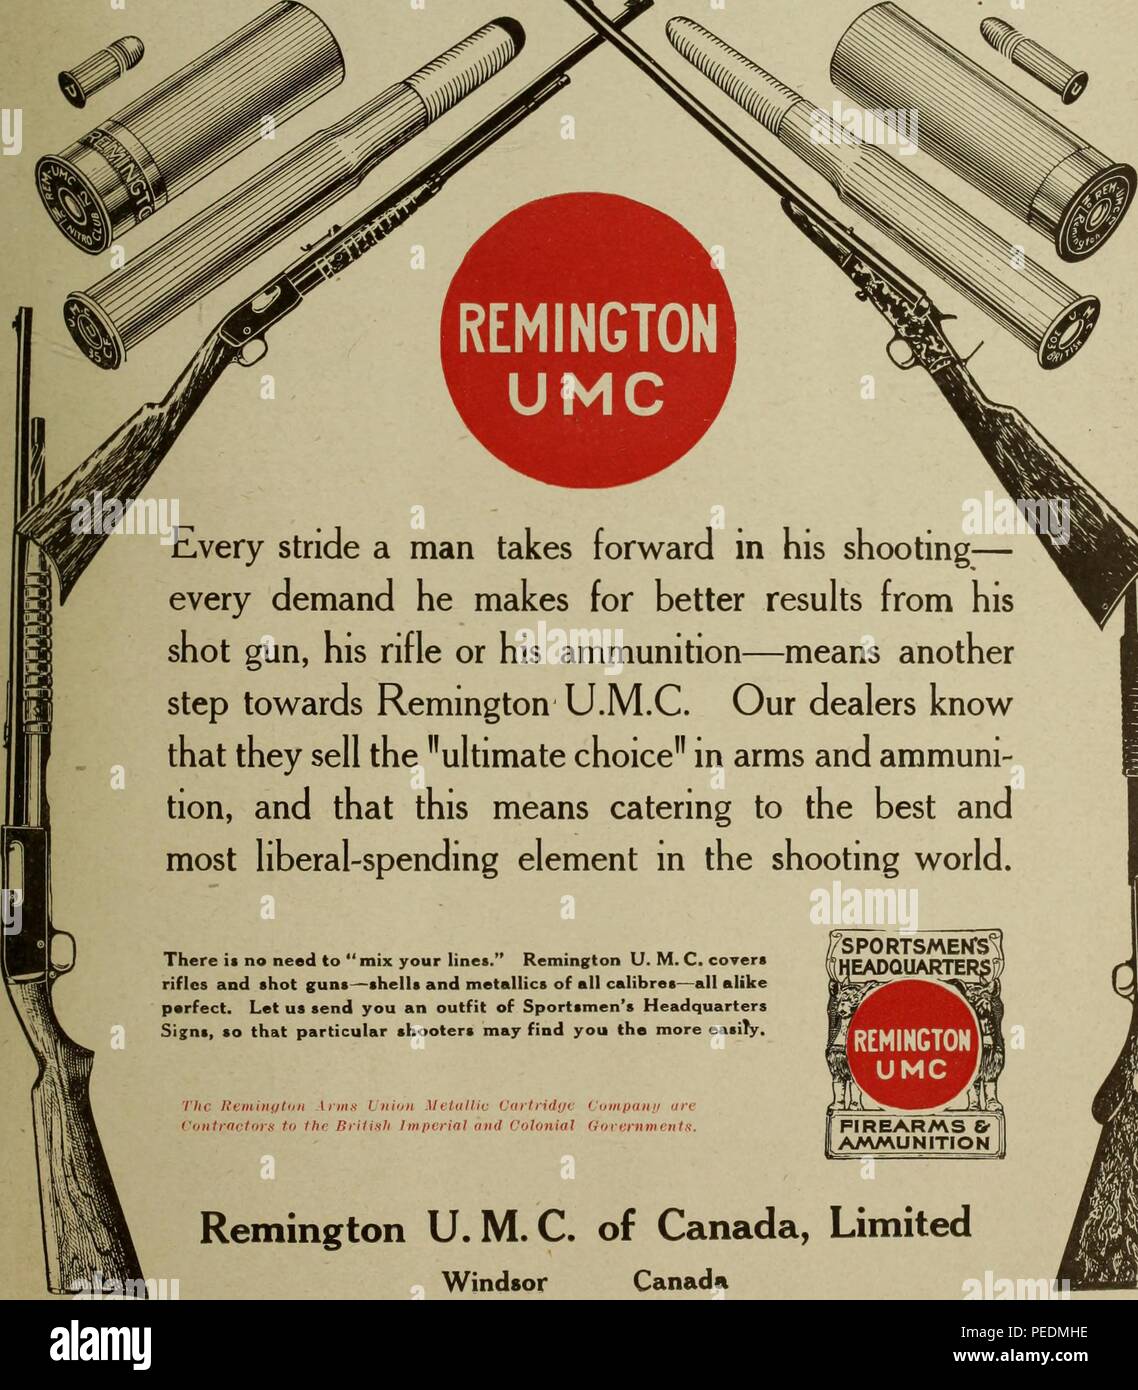 Stampa in bianco e nero pubblicità Remington UMC (Unione cartuccia metallica) Fucili a canna liscia e conchiglie, con le immagini di ciascuna e con testo di marketing sottolineando che Remington's componenti integrati rendono superflua la 'mix linee', 1917. La cortesia Internet Archive. () Foto Stock